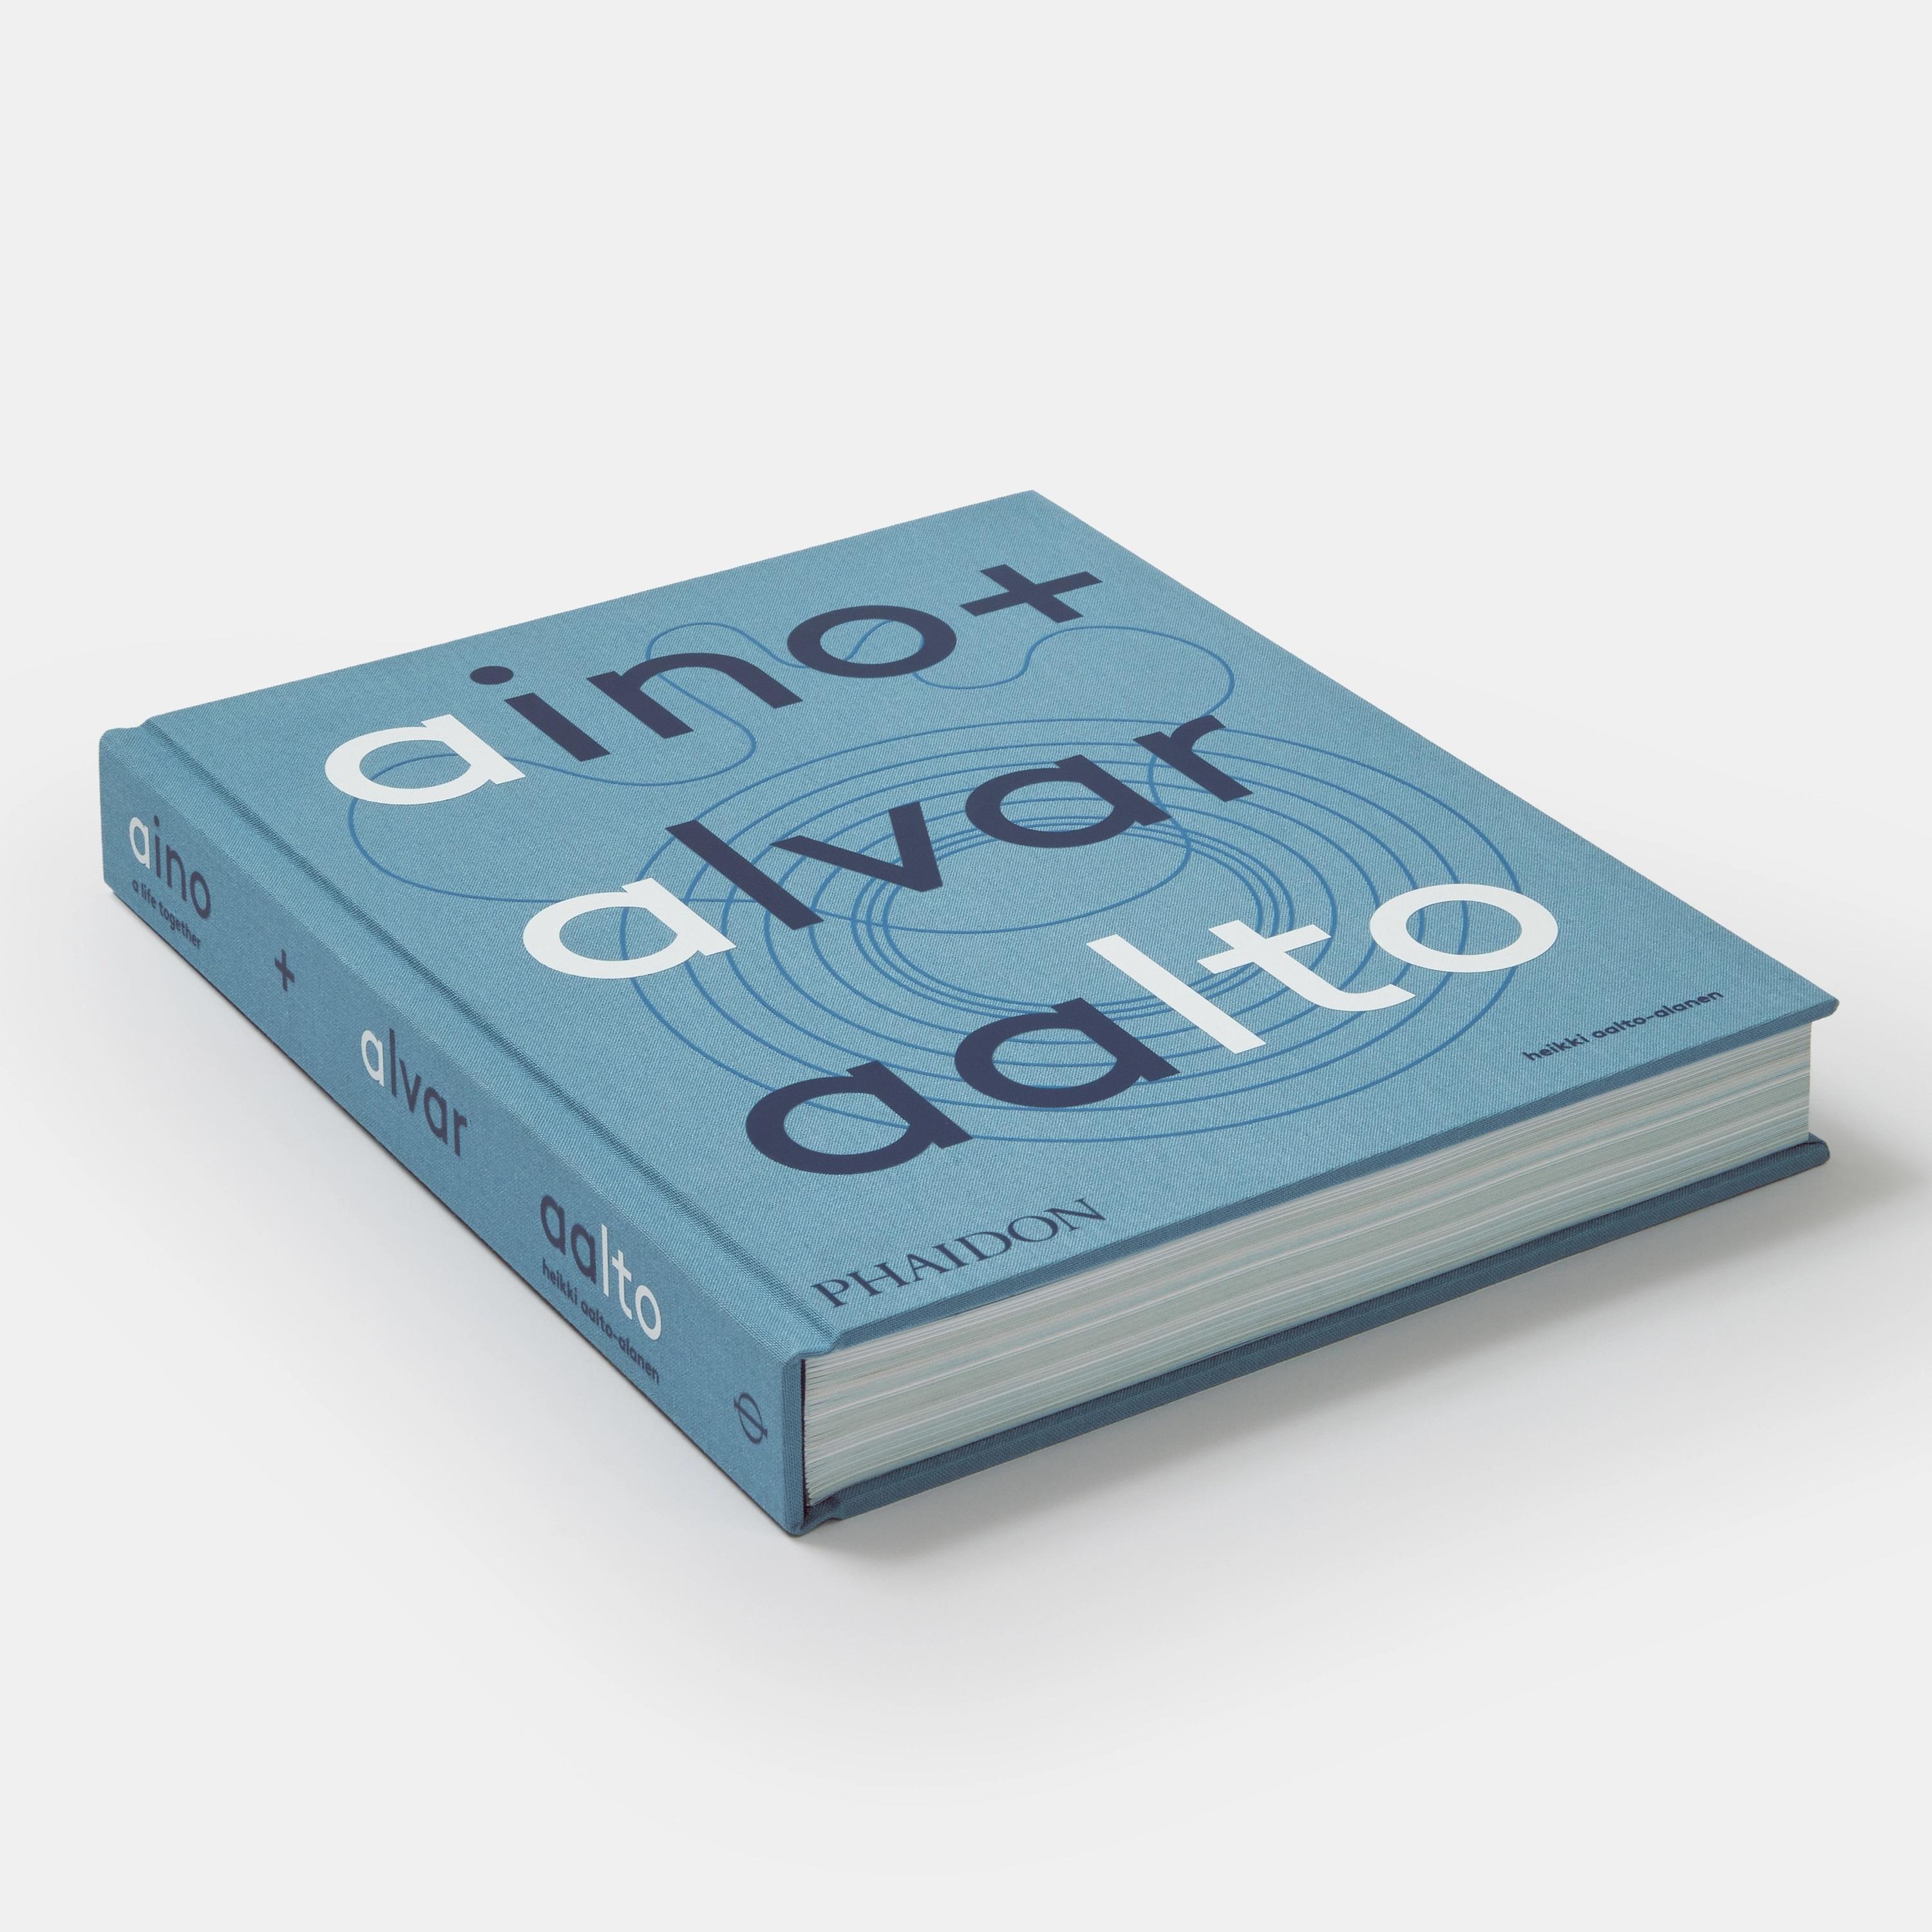 Aino + Alvar Aalto / A Life Together .